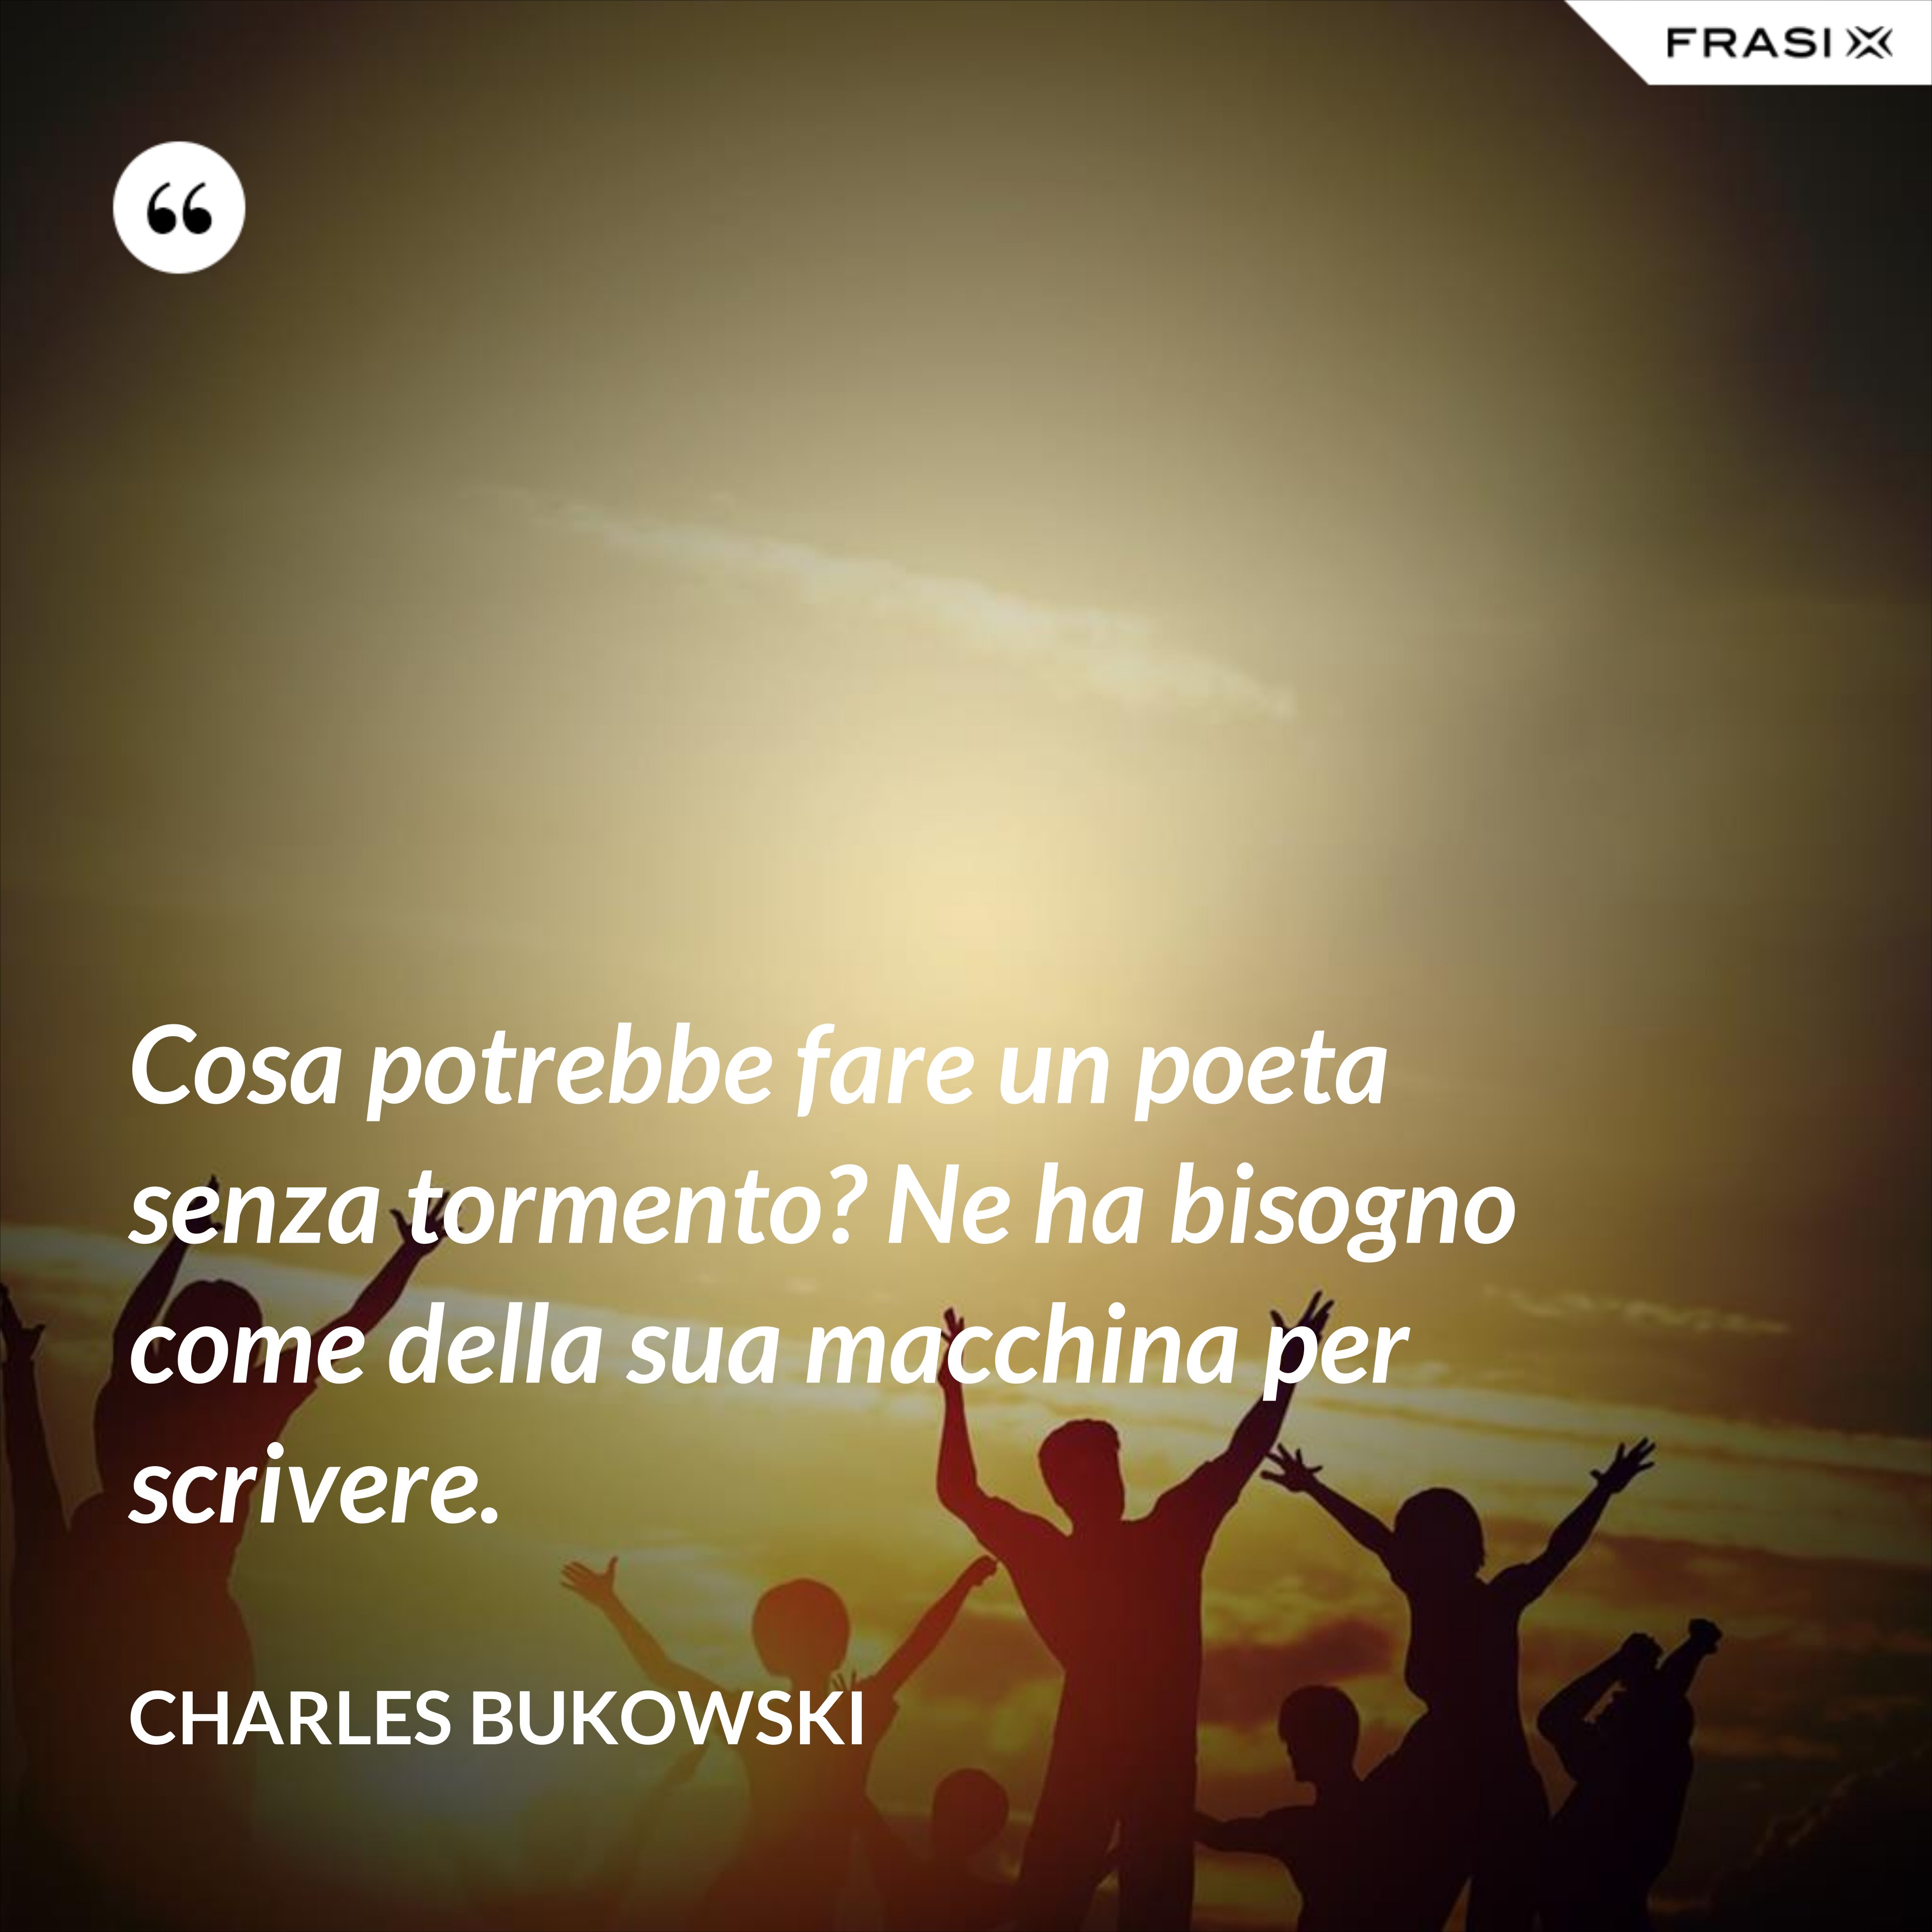 Cosa potrebbe fare un poeta senza tormento? Ne ha bisogno come della sua macchina per scrivere. - Charles Bukowski